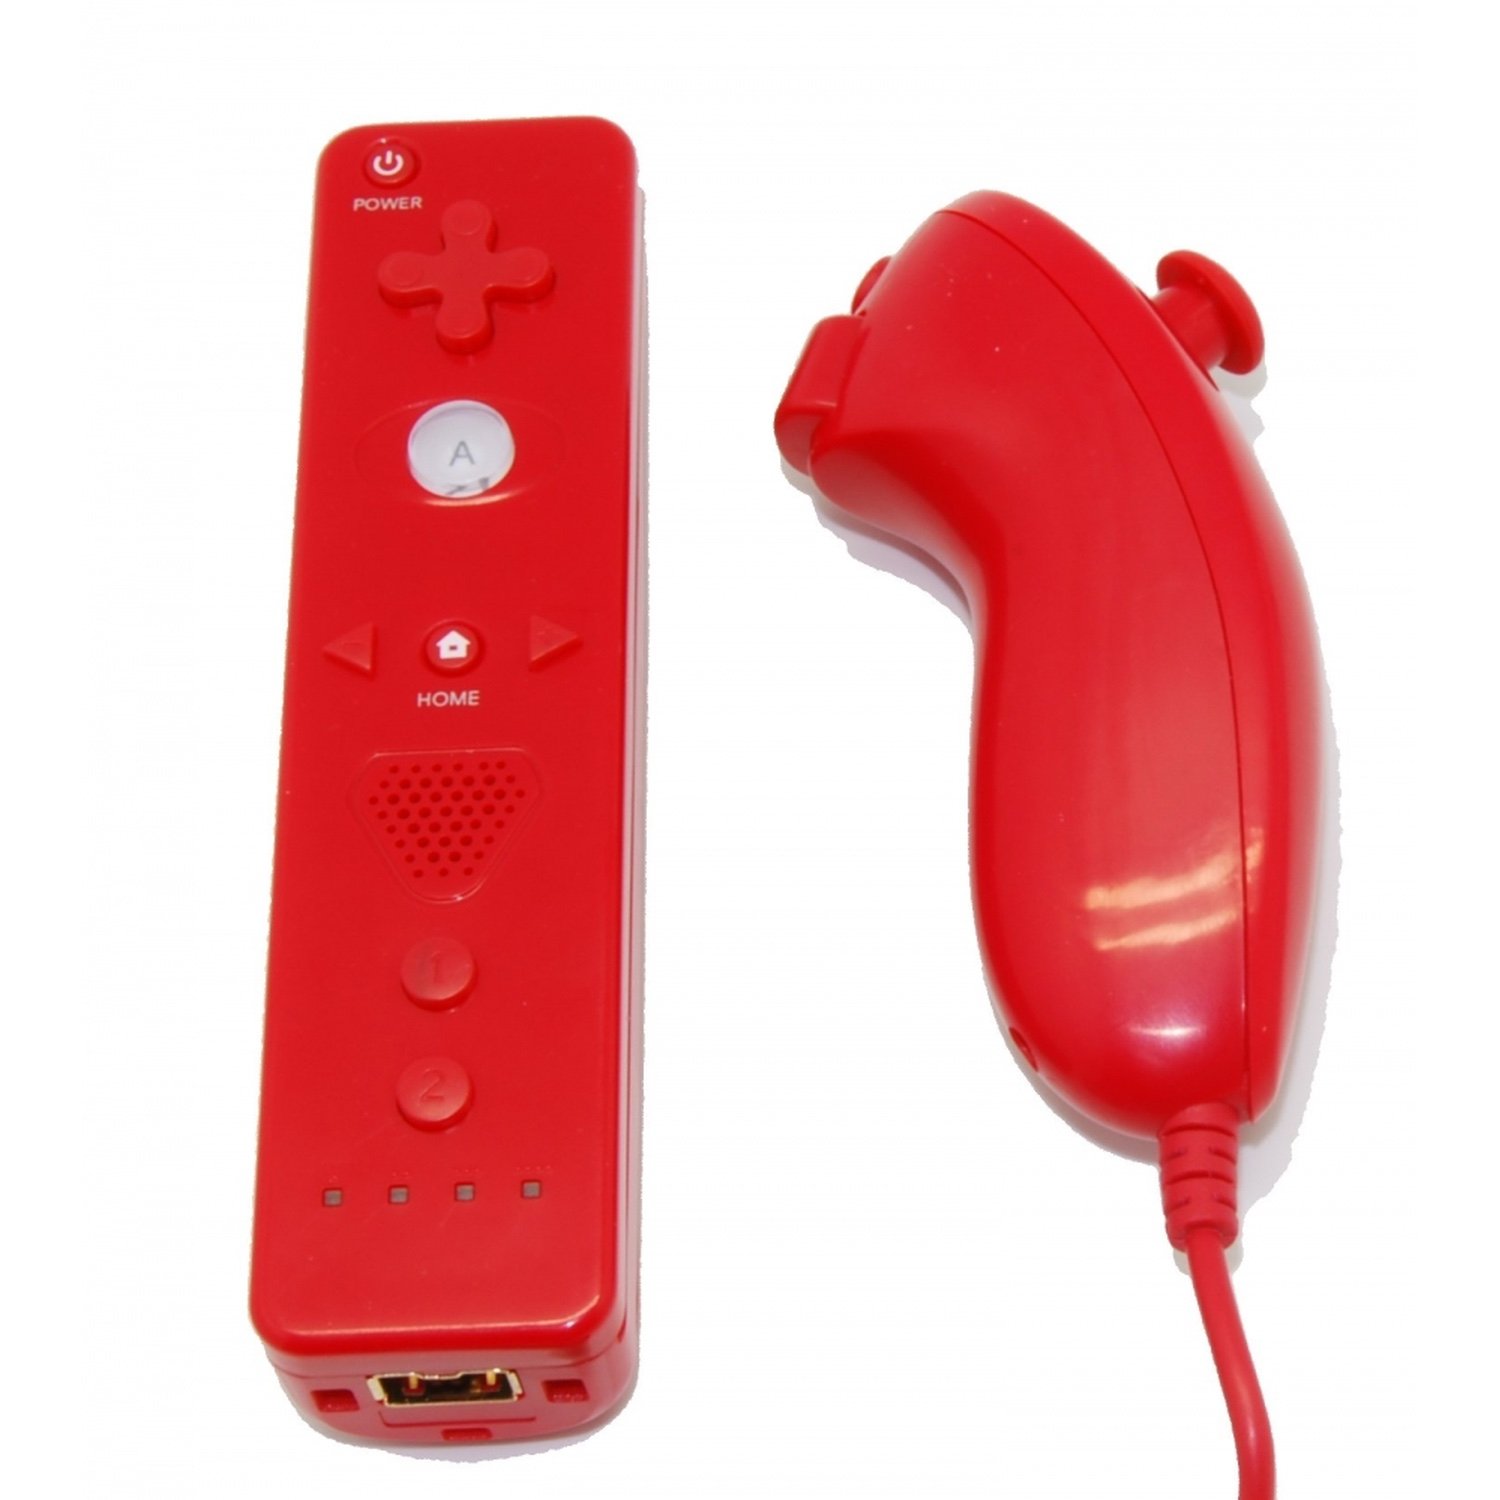 Pack Wii Remote Controller Met Motion Plus Ingebouwde + Nunchuck Compatibel Wii Netwerk